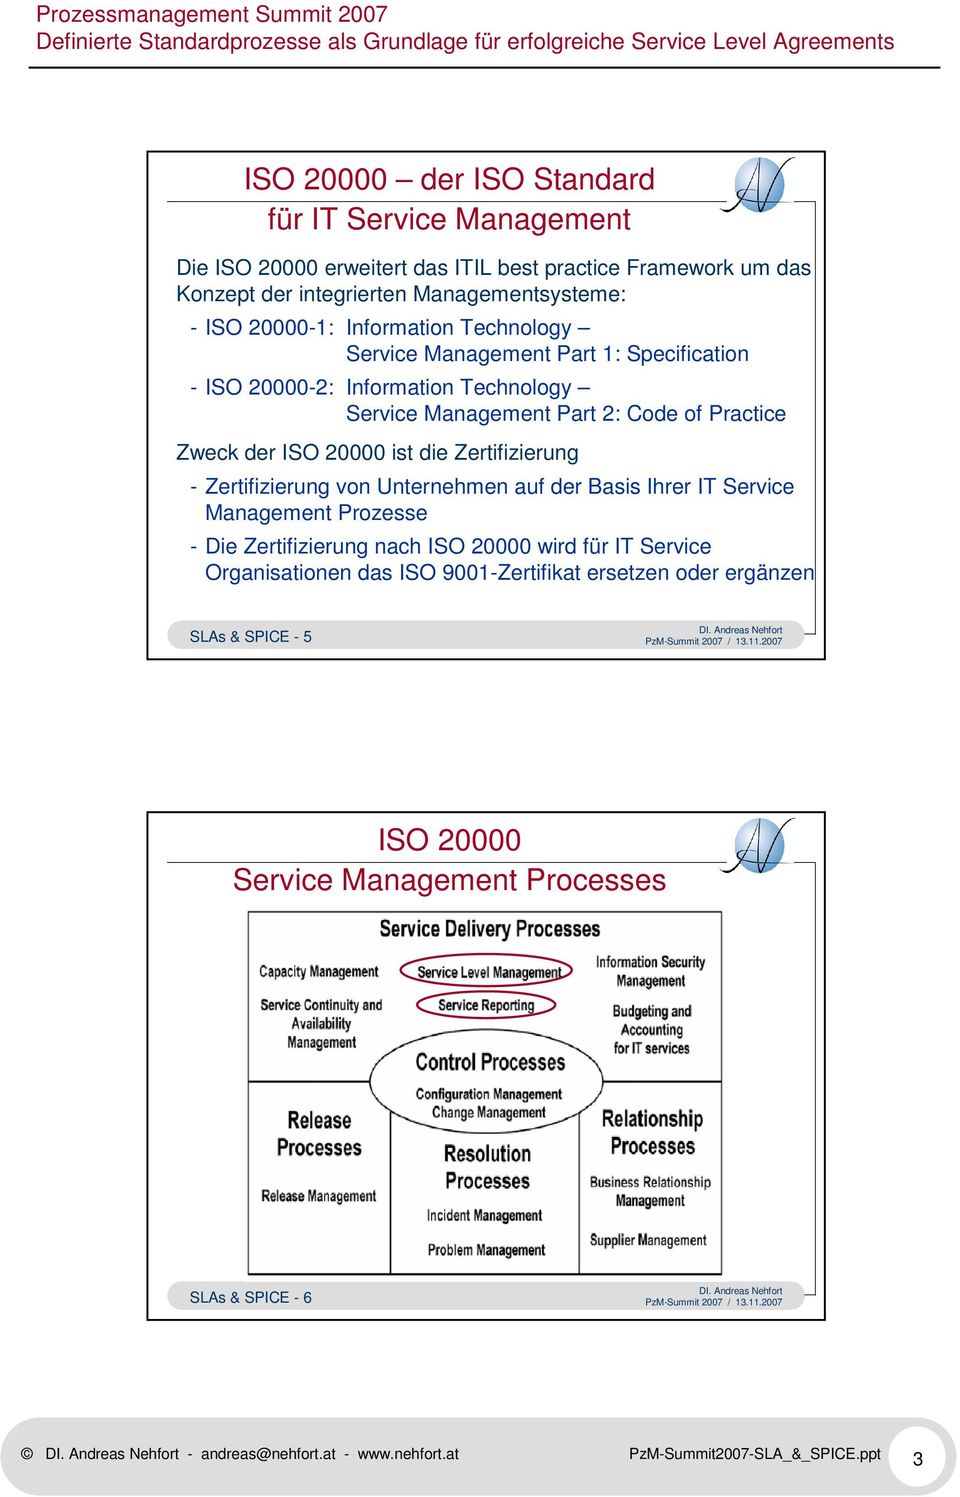 Zertifizierung - Zertifizierung von Unternehmen auf der Basis Ihrer IT Service Management Prozesse - Die Zertifizierung nach ISO 20000 wird für IT Service Organisationen das ISO